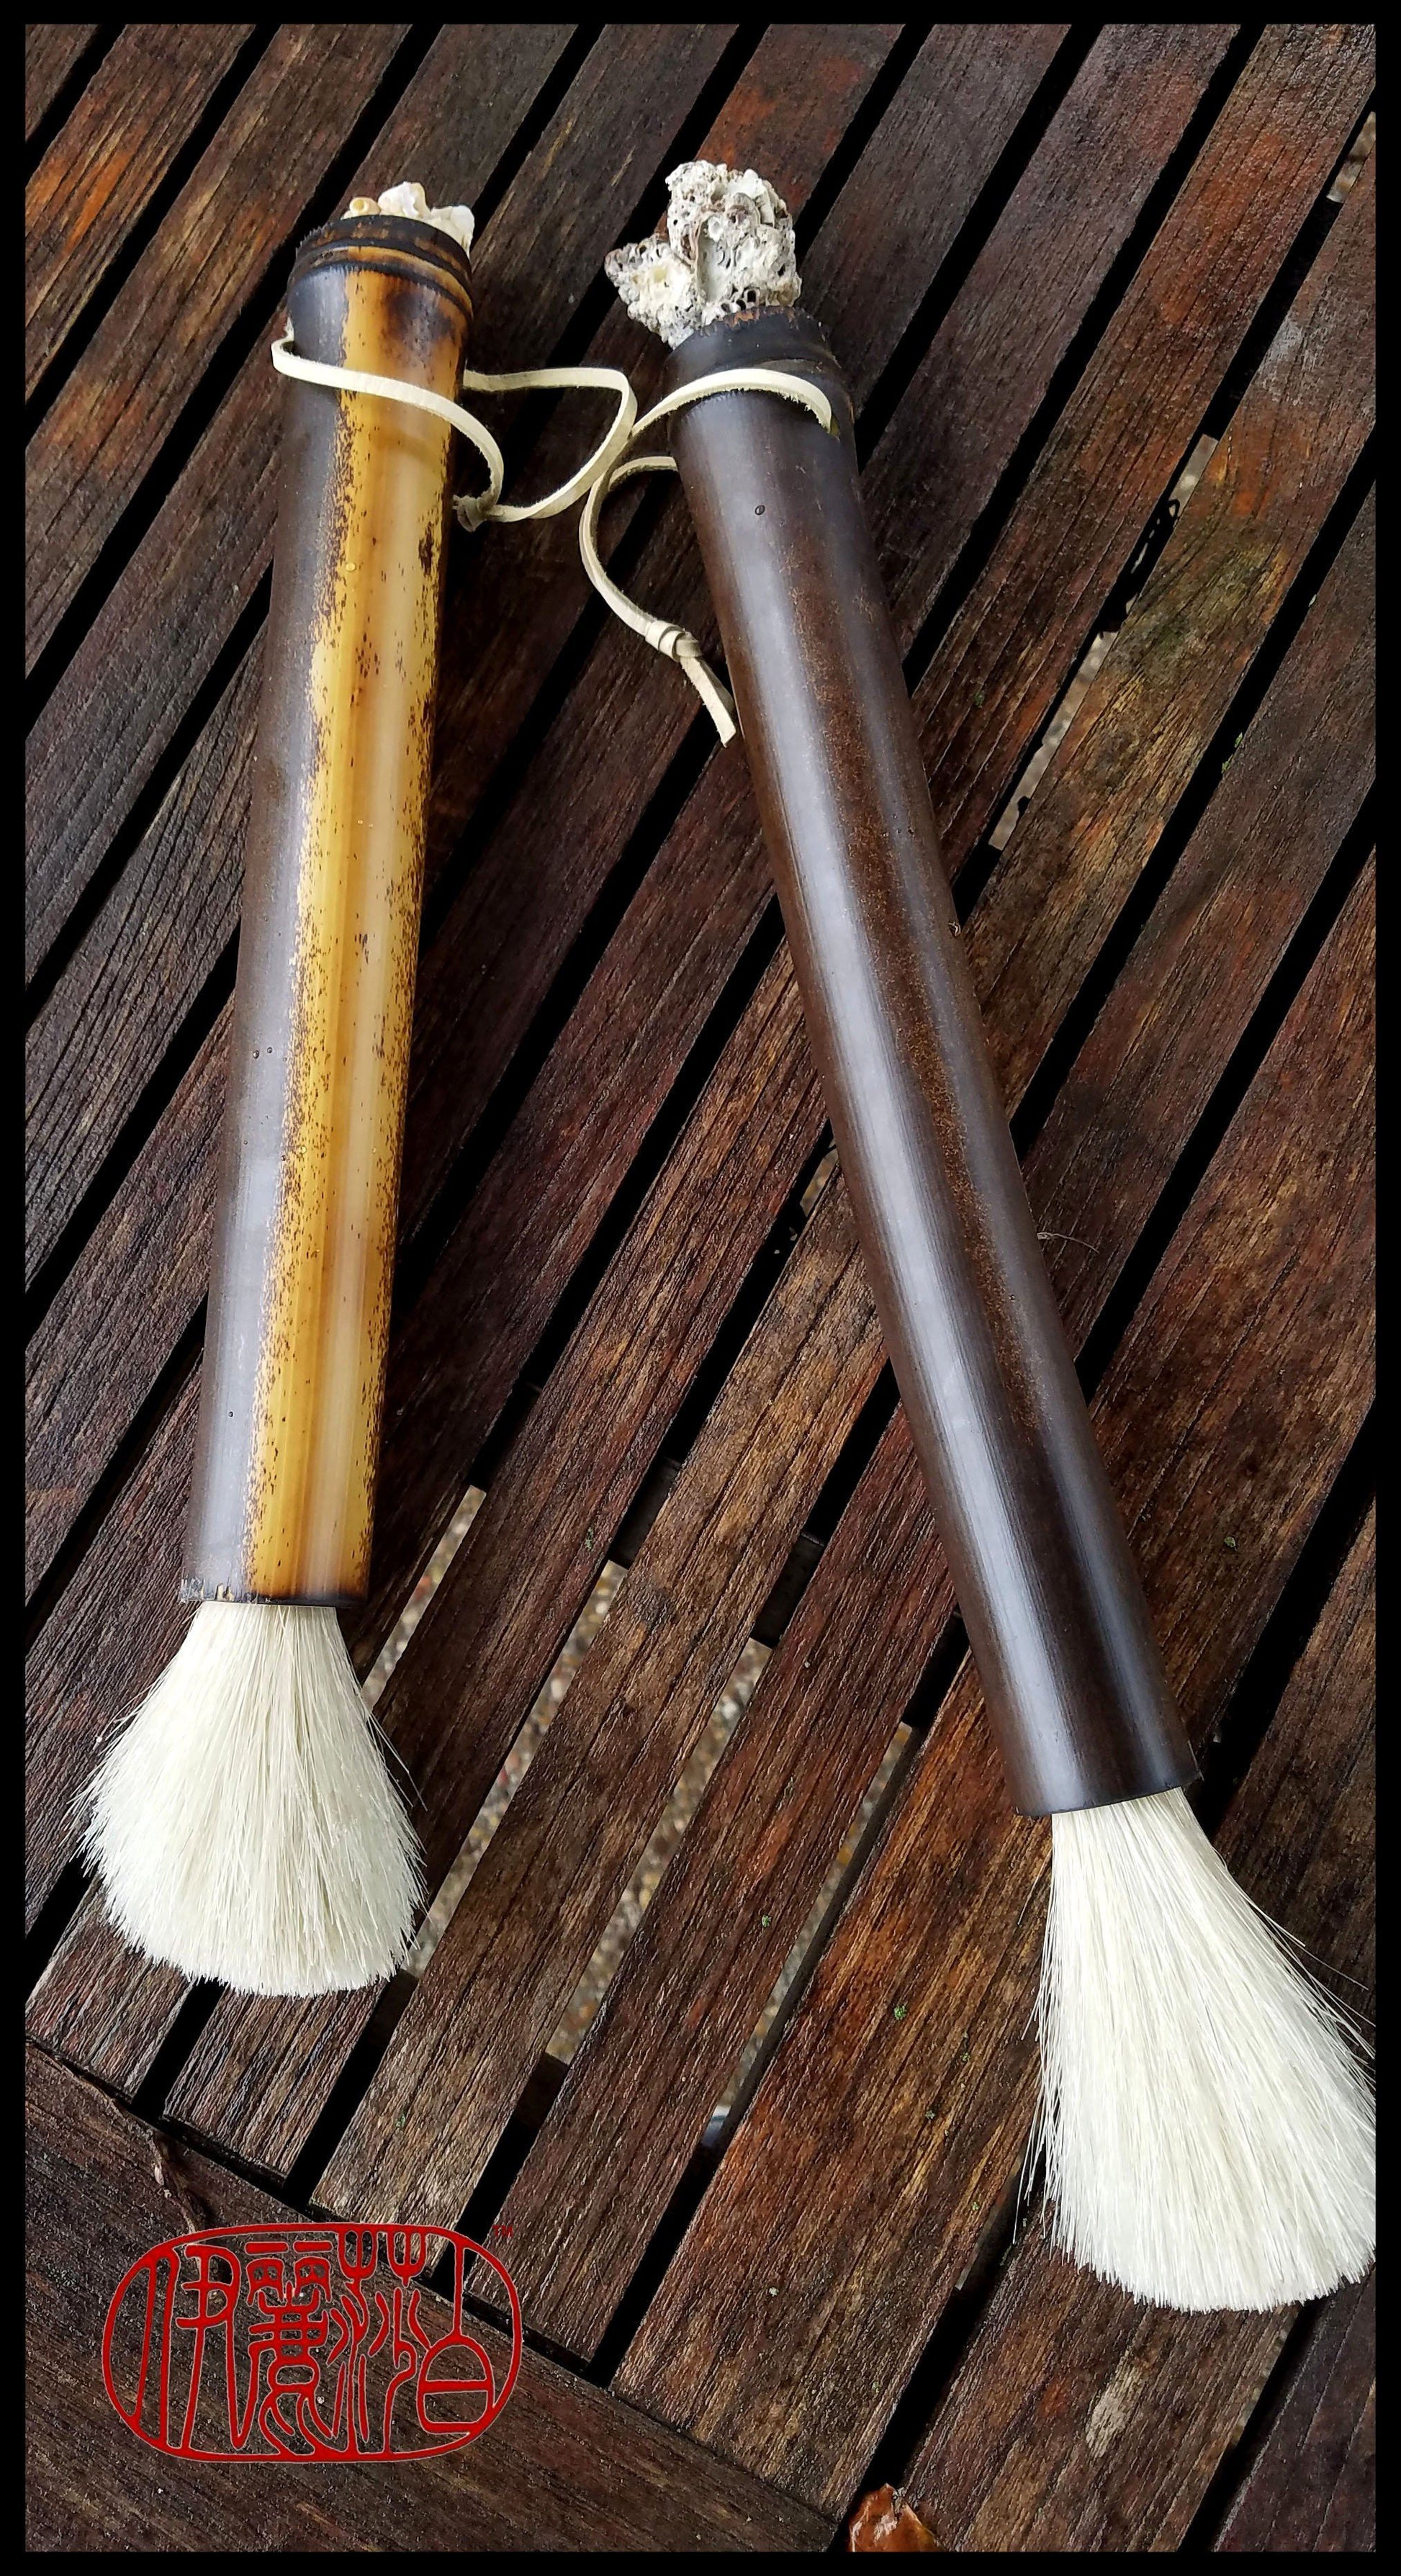 https://elizabethschowachertart.com/cdn/shop/products/handmade-paint-brush-3-inch-white-horse-hair-bristles-on-a-9-inch-black-bamboo-handle-art-supplies-elizabeth-schowachert-art-277678.jpg?v=1562786913&width=1946